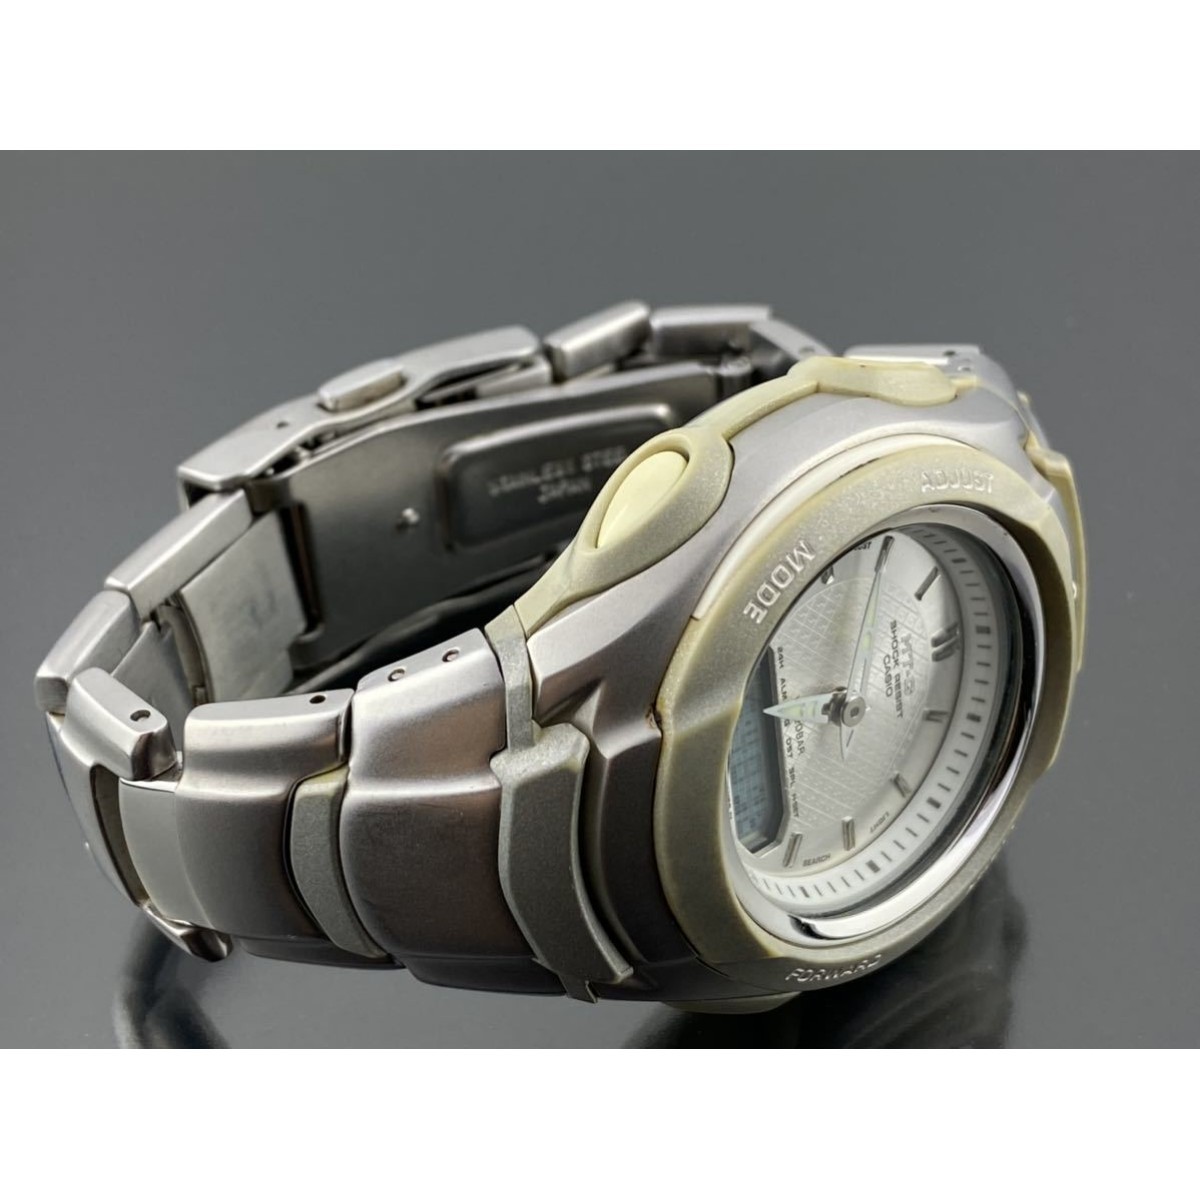 【正規稼働品】メンズ レディース腕時計 カシオ CASIO Gショック MT-G Baby-G MTG-530LV アナデジ